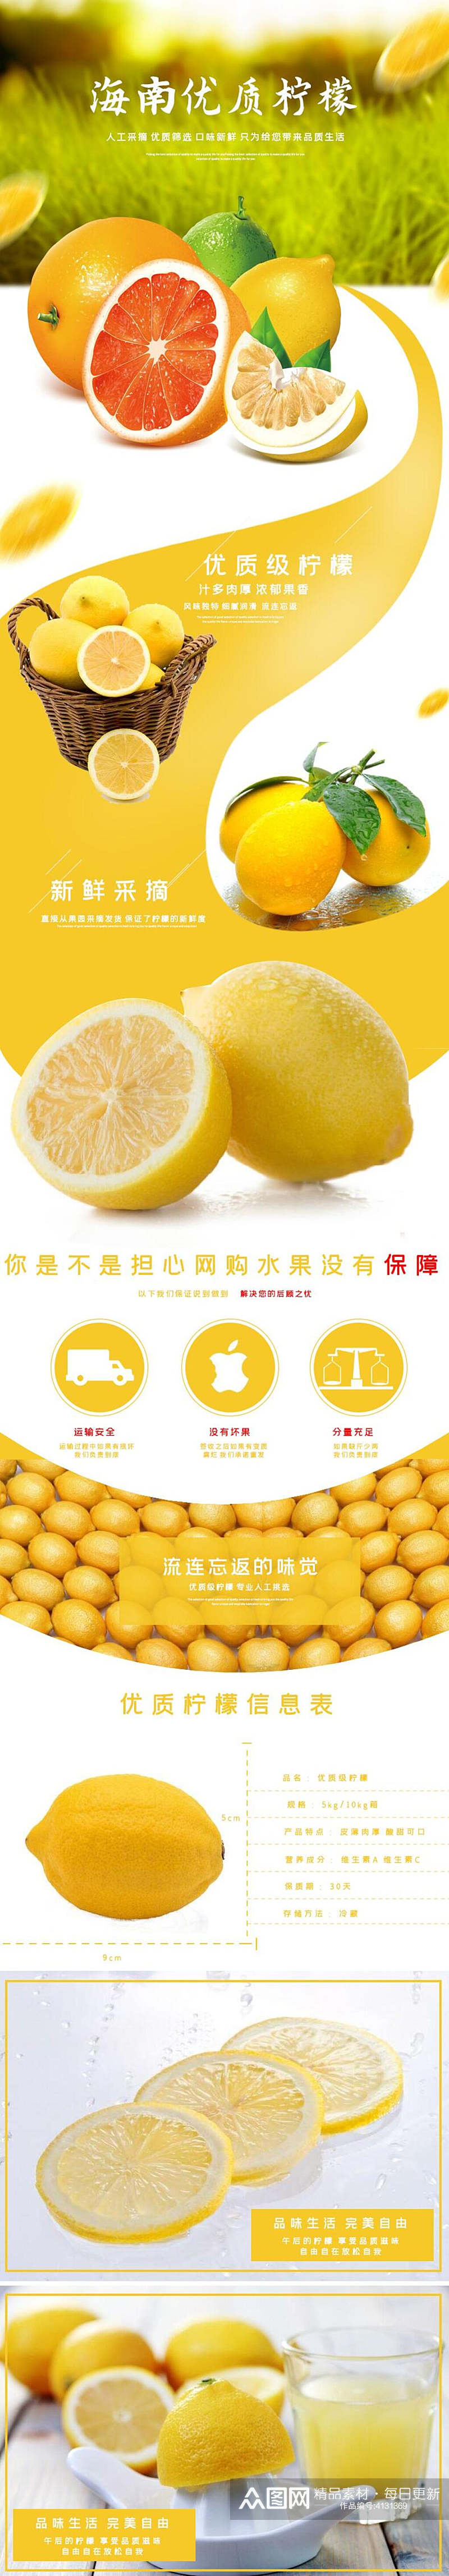 海南优质柠檬水果详情页素材